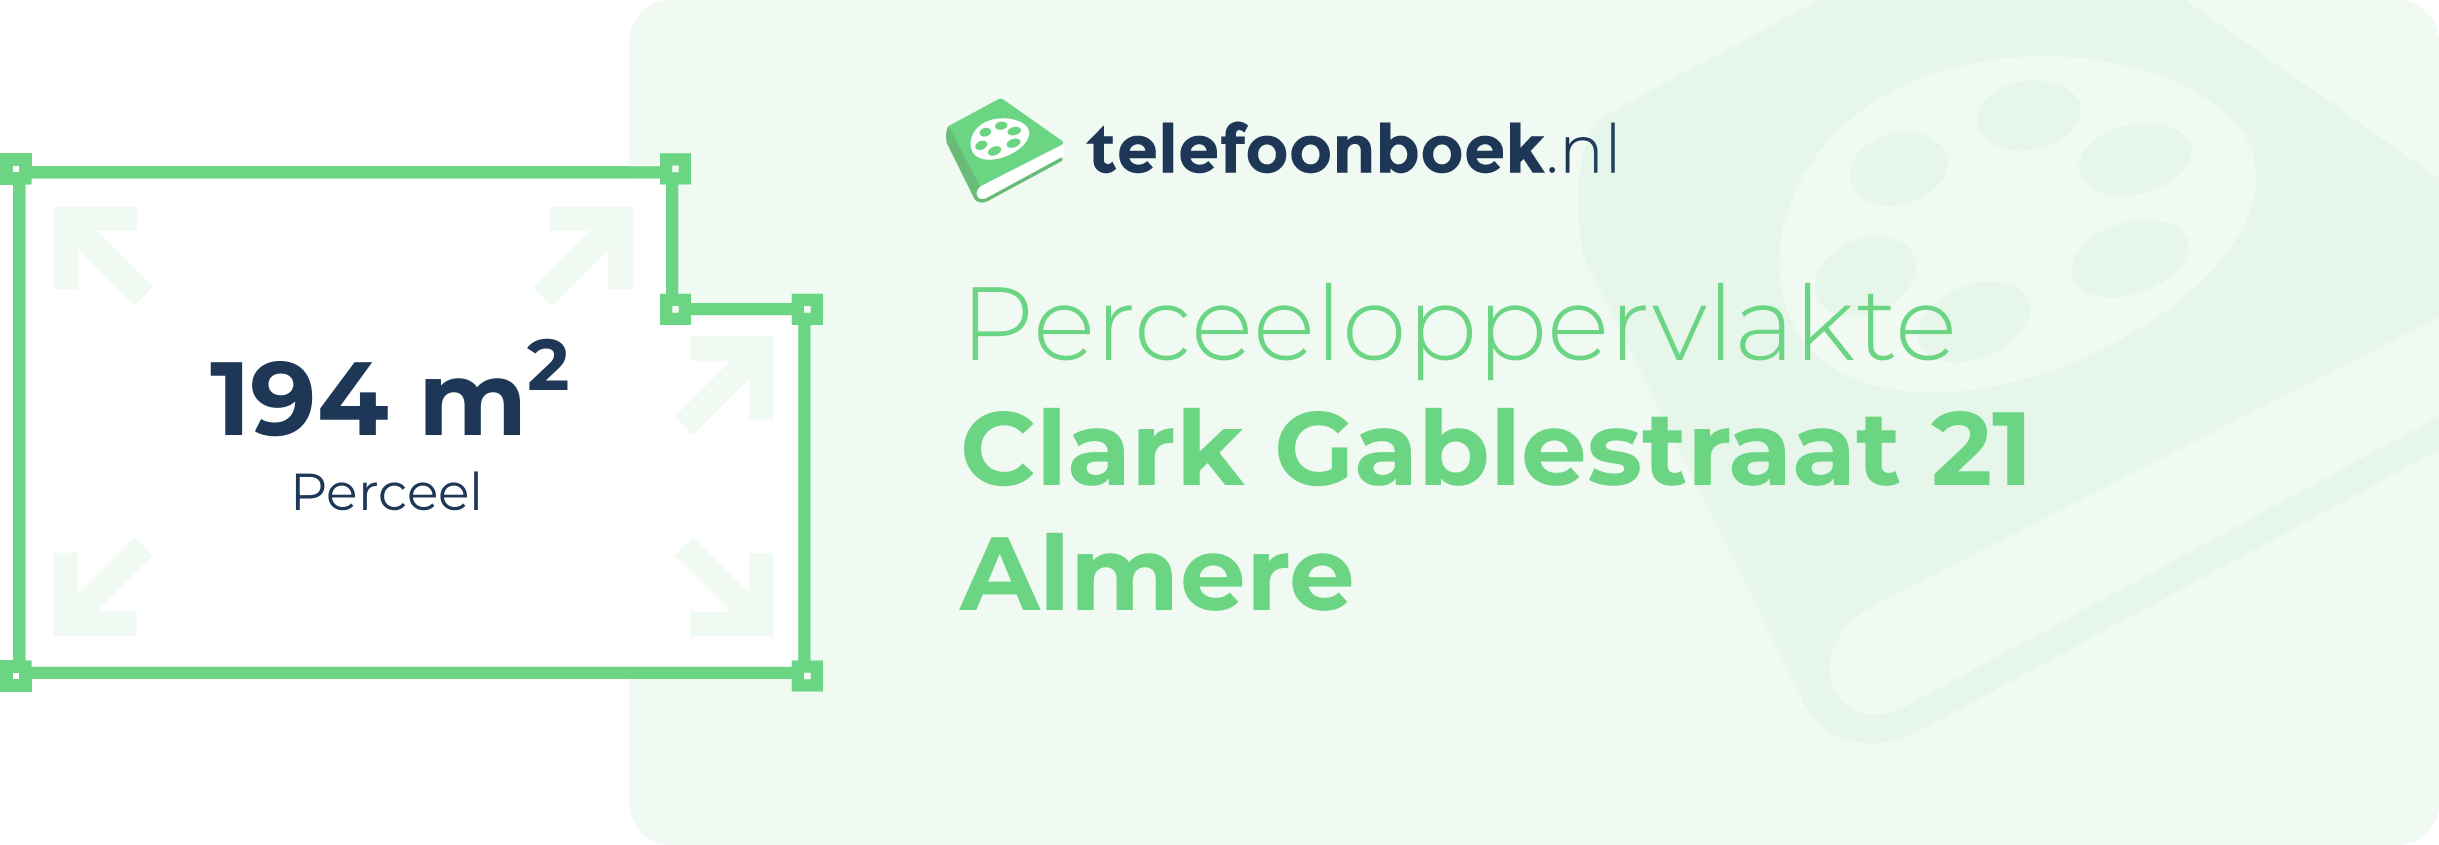 Perceeloppervlakte Clark Gablestraat 21 Almere